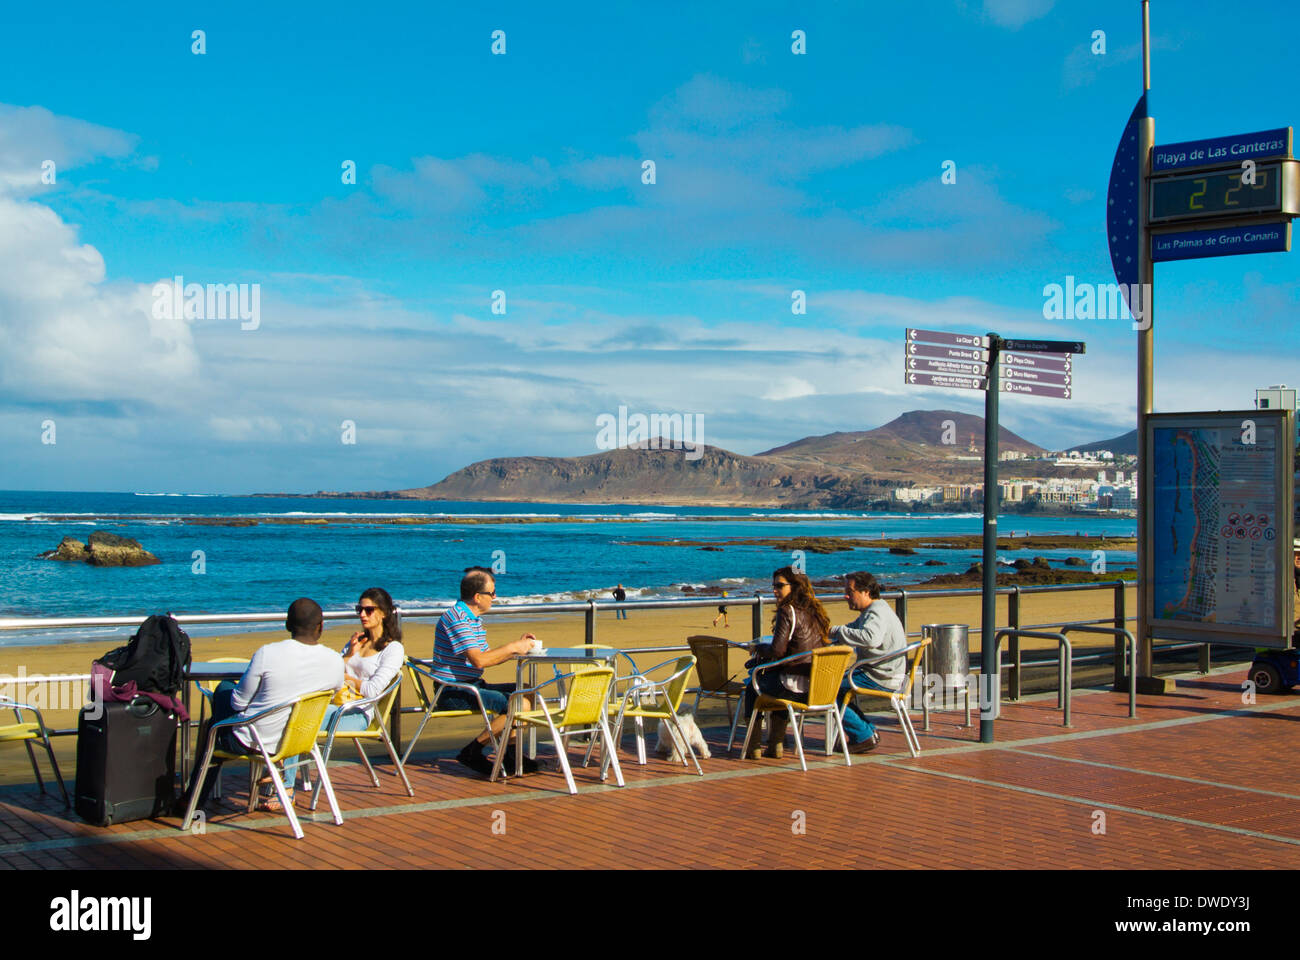 Cafe terrace along Paseo Cantera beach promenade, Las Palmas de Gran Canaria, the Canary Islands, Spain, Europe Stock Photo